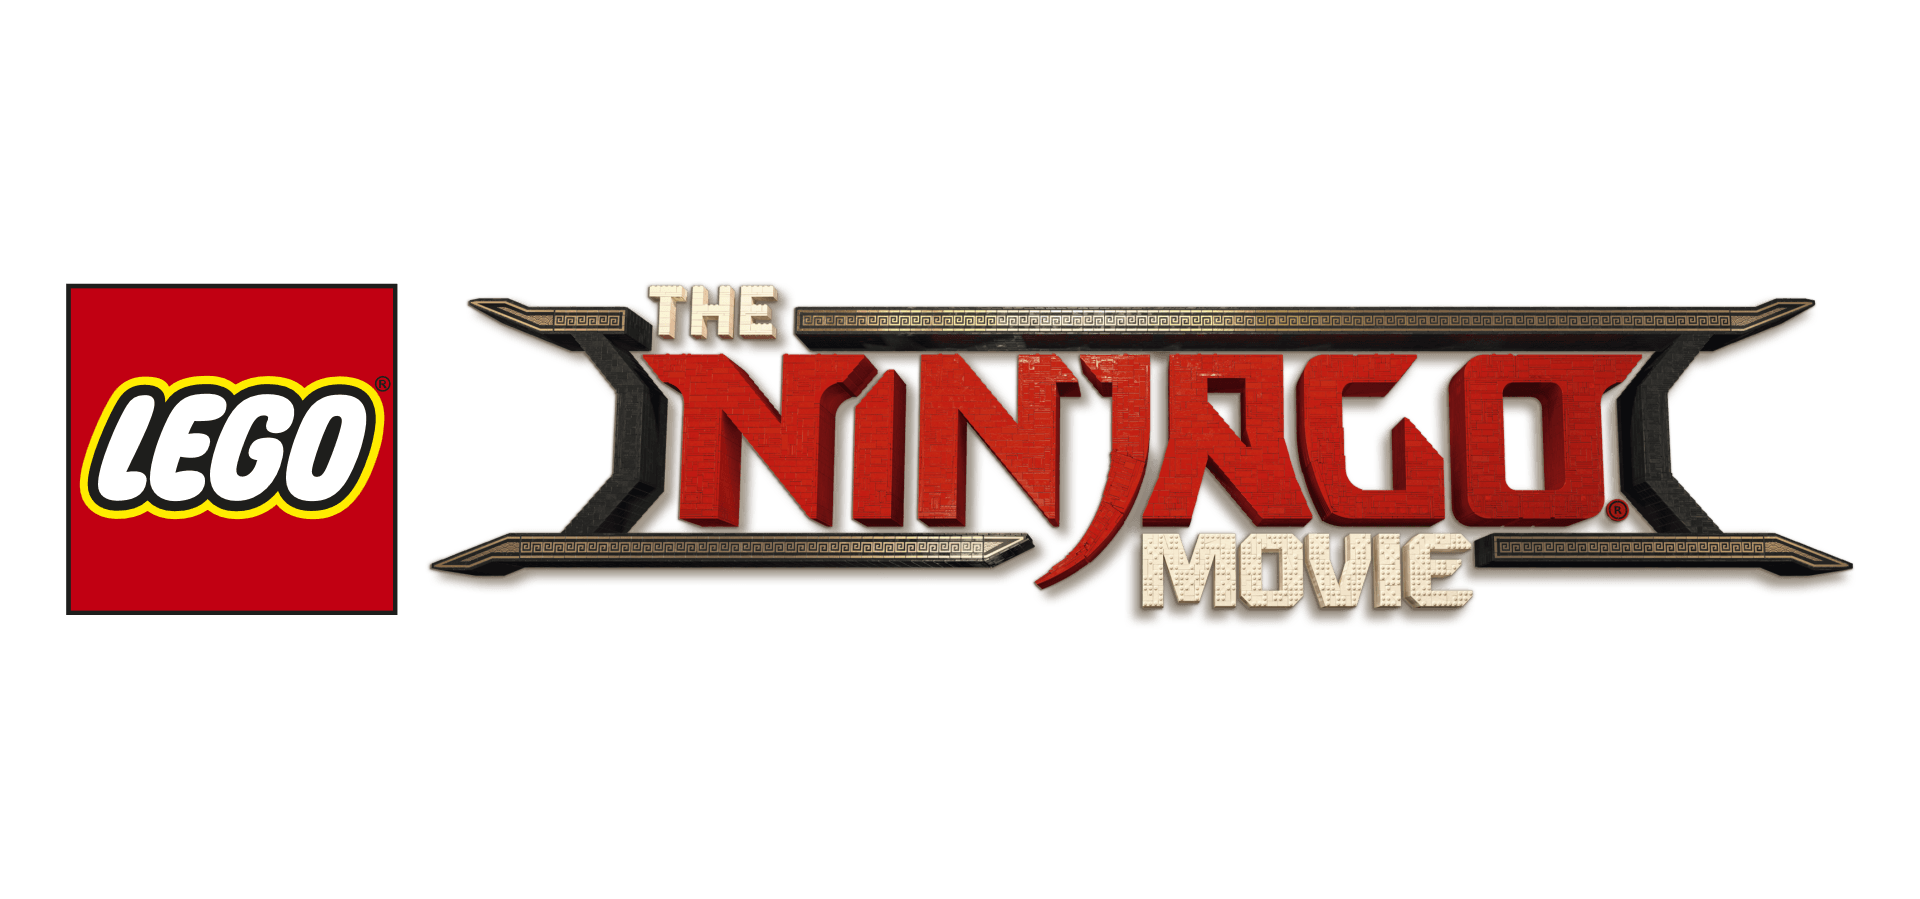 Ninjago Logo - LEGO® Ninjago Movie - Spinjitzu Training